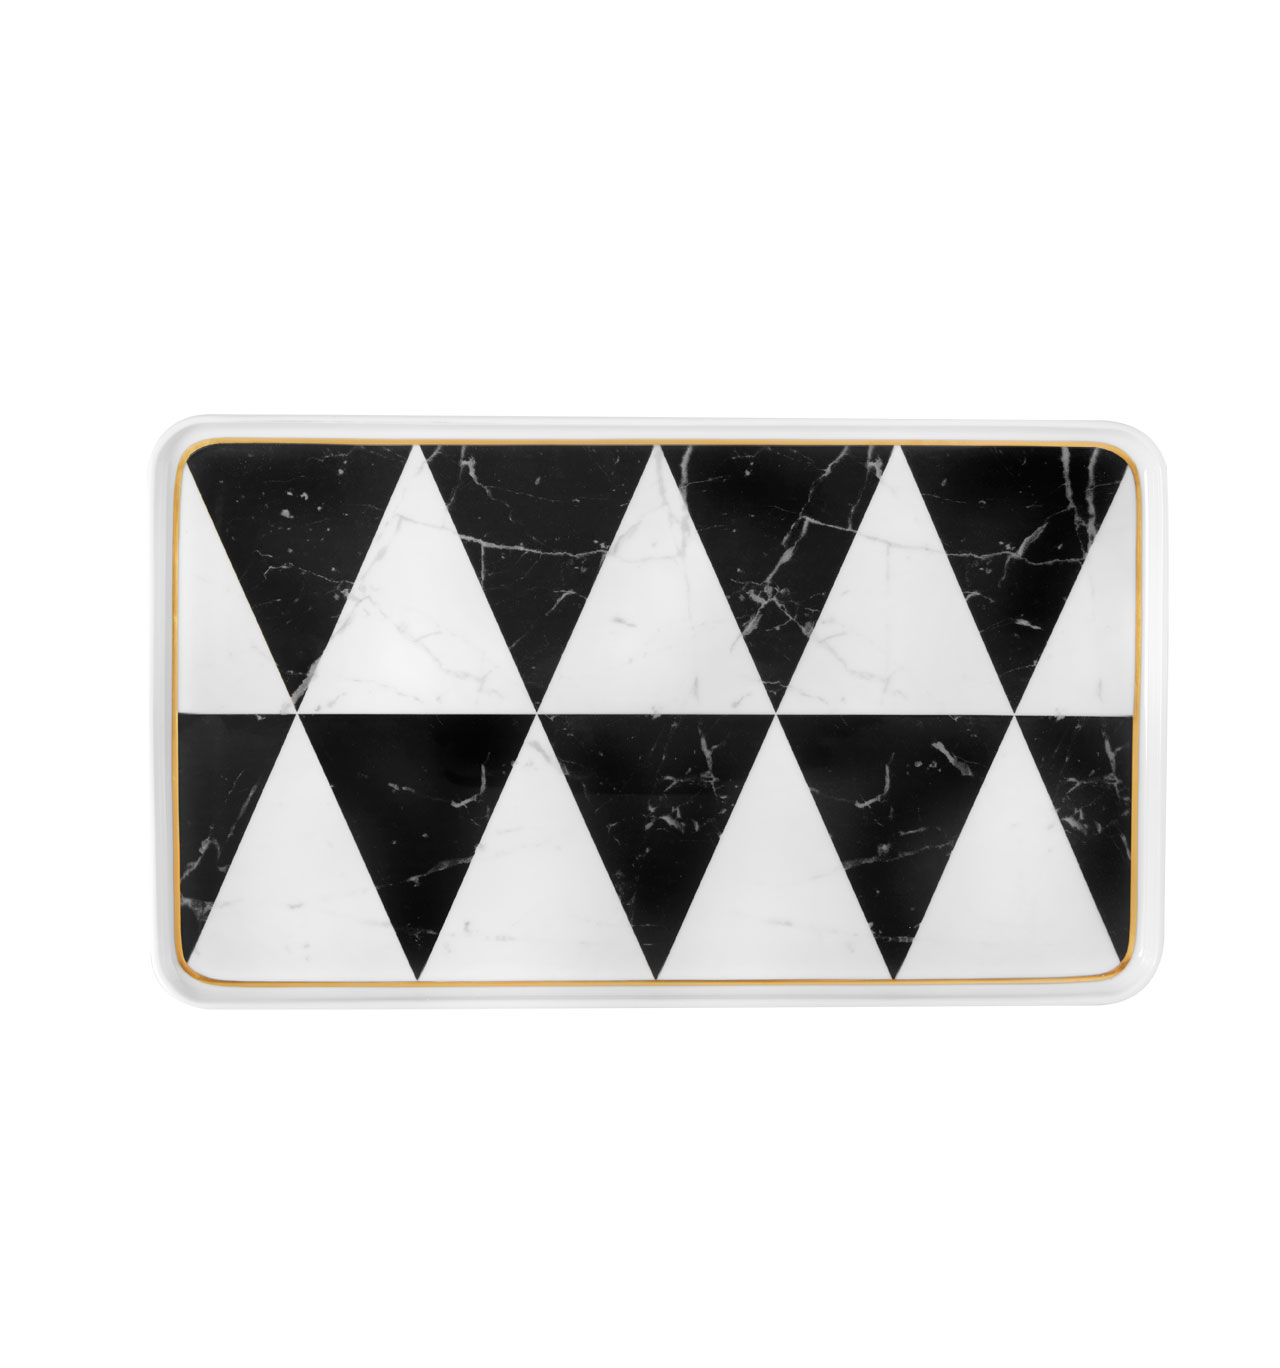 Vista Alegre Collection Carrara small rectangular platter